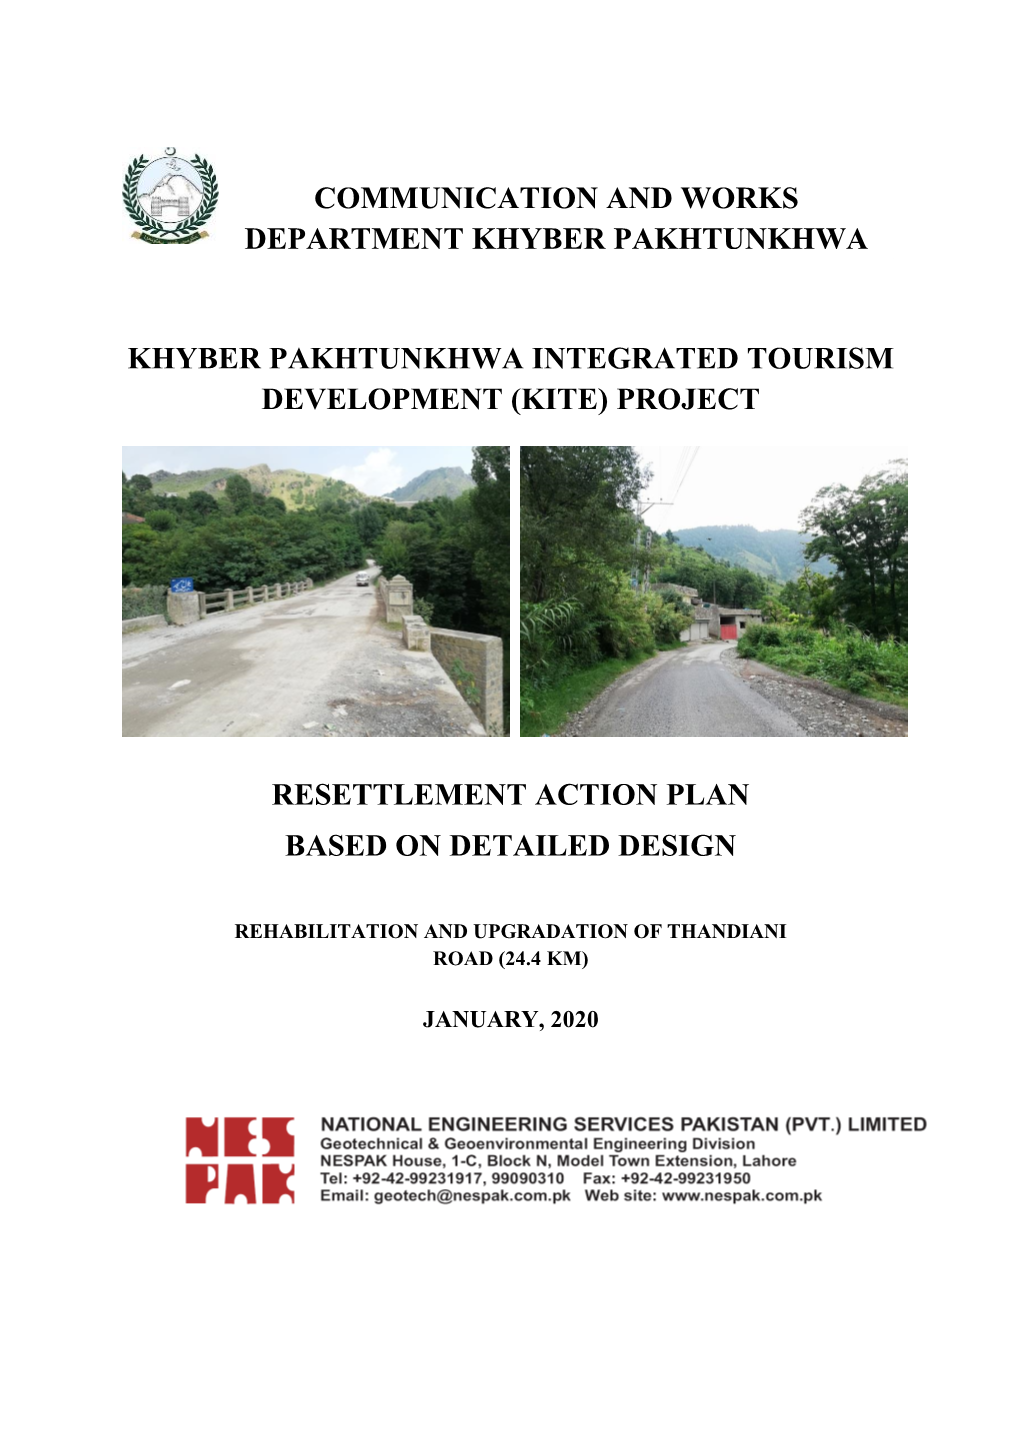 Khyber Pakhtunkhwa Integrated Tourism Development (Kite) Project